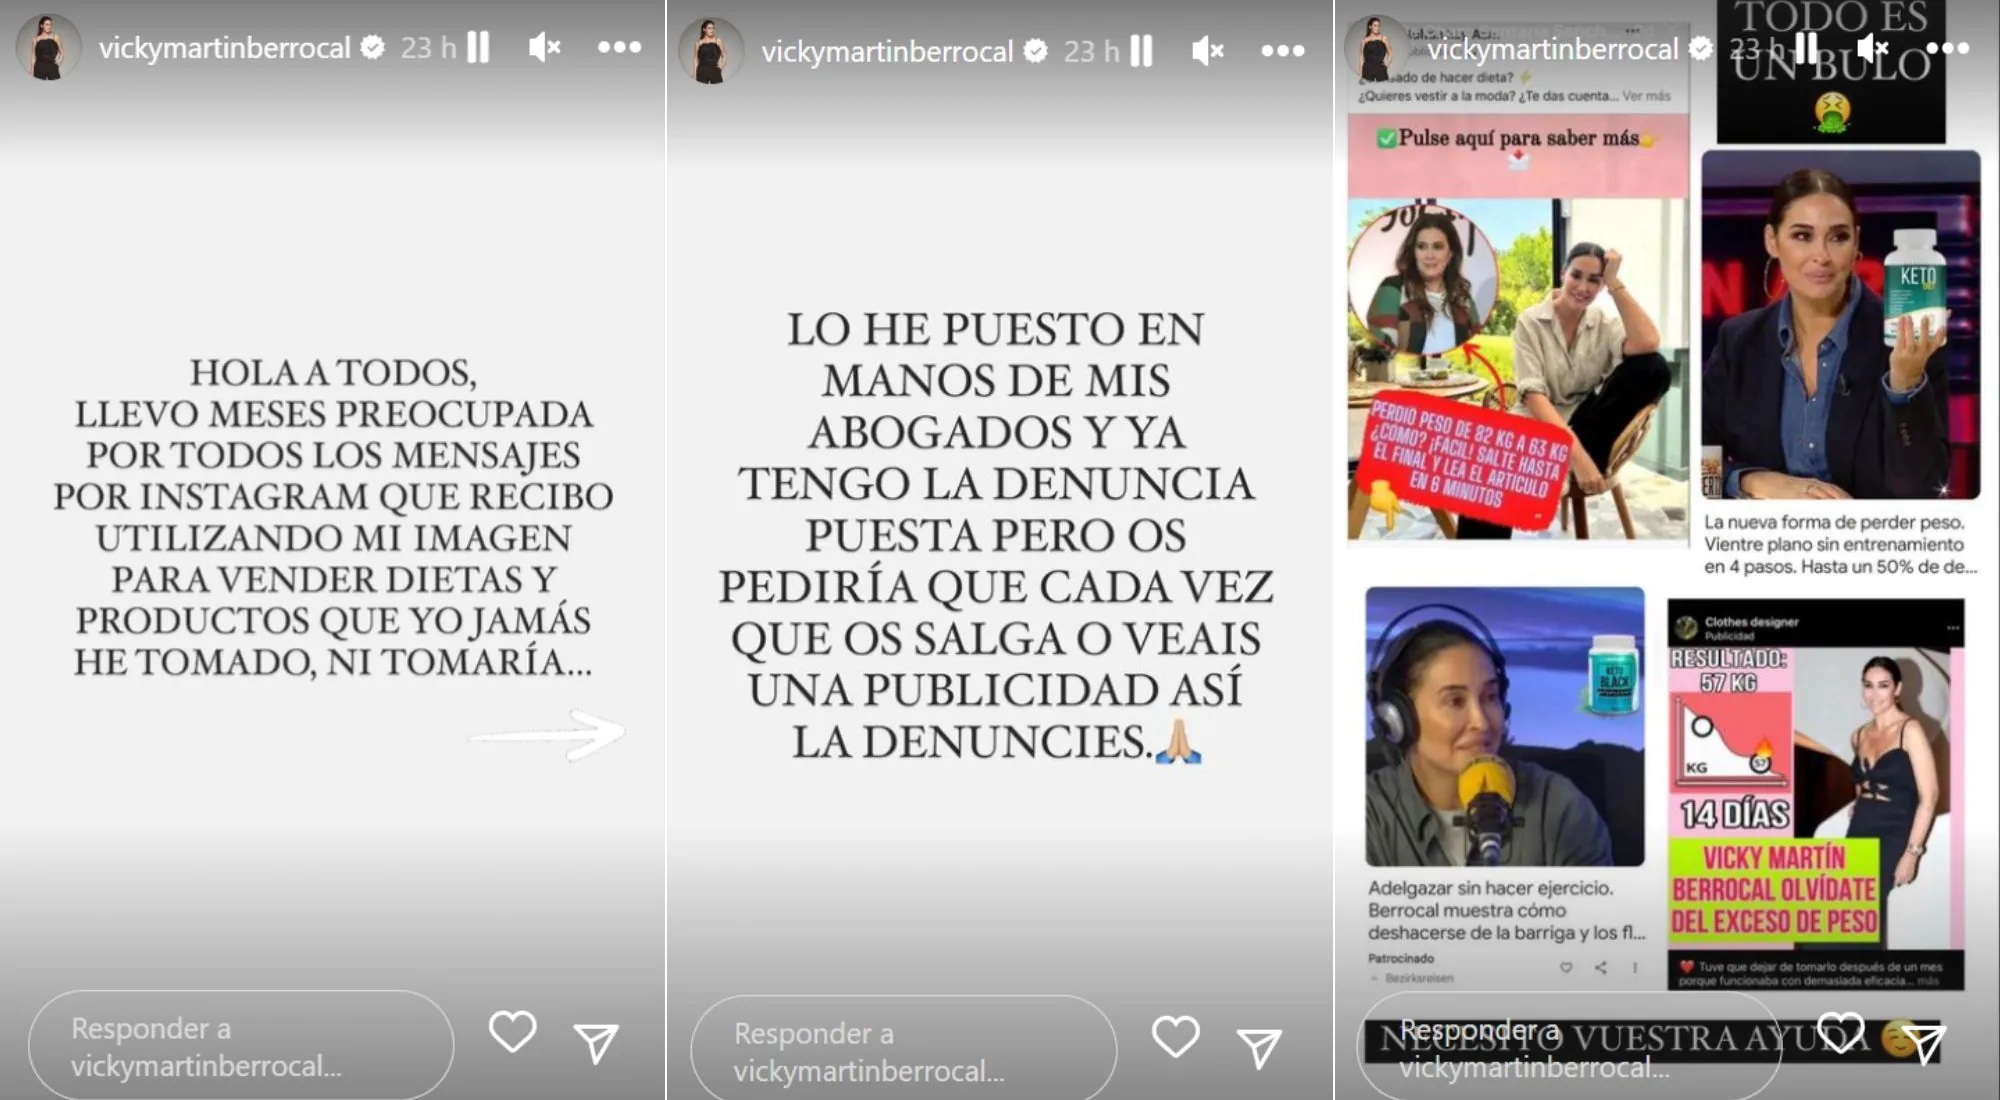 Vicky Martín Berrocal ha pedido ayuda a sus seguidores (Instagram)